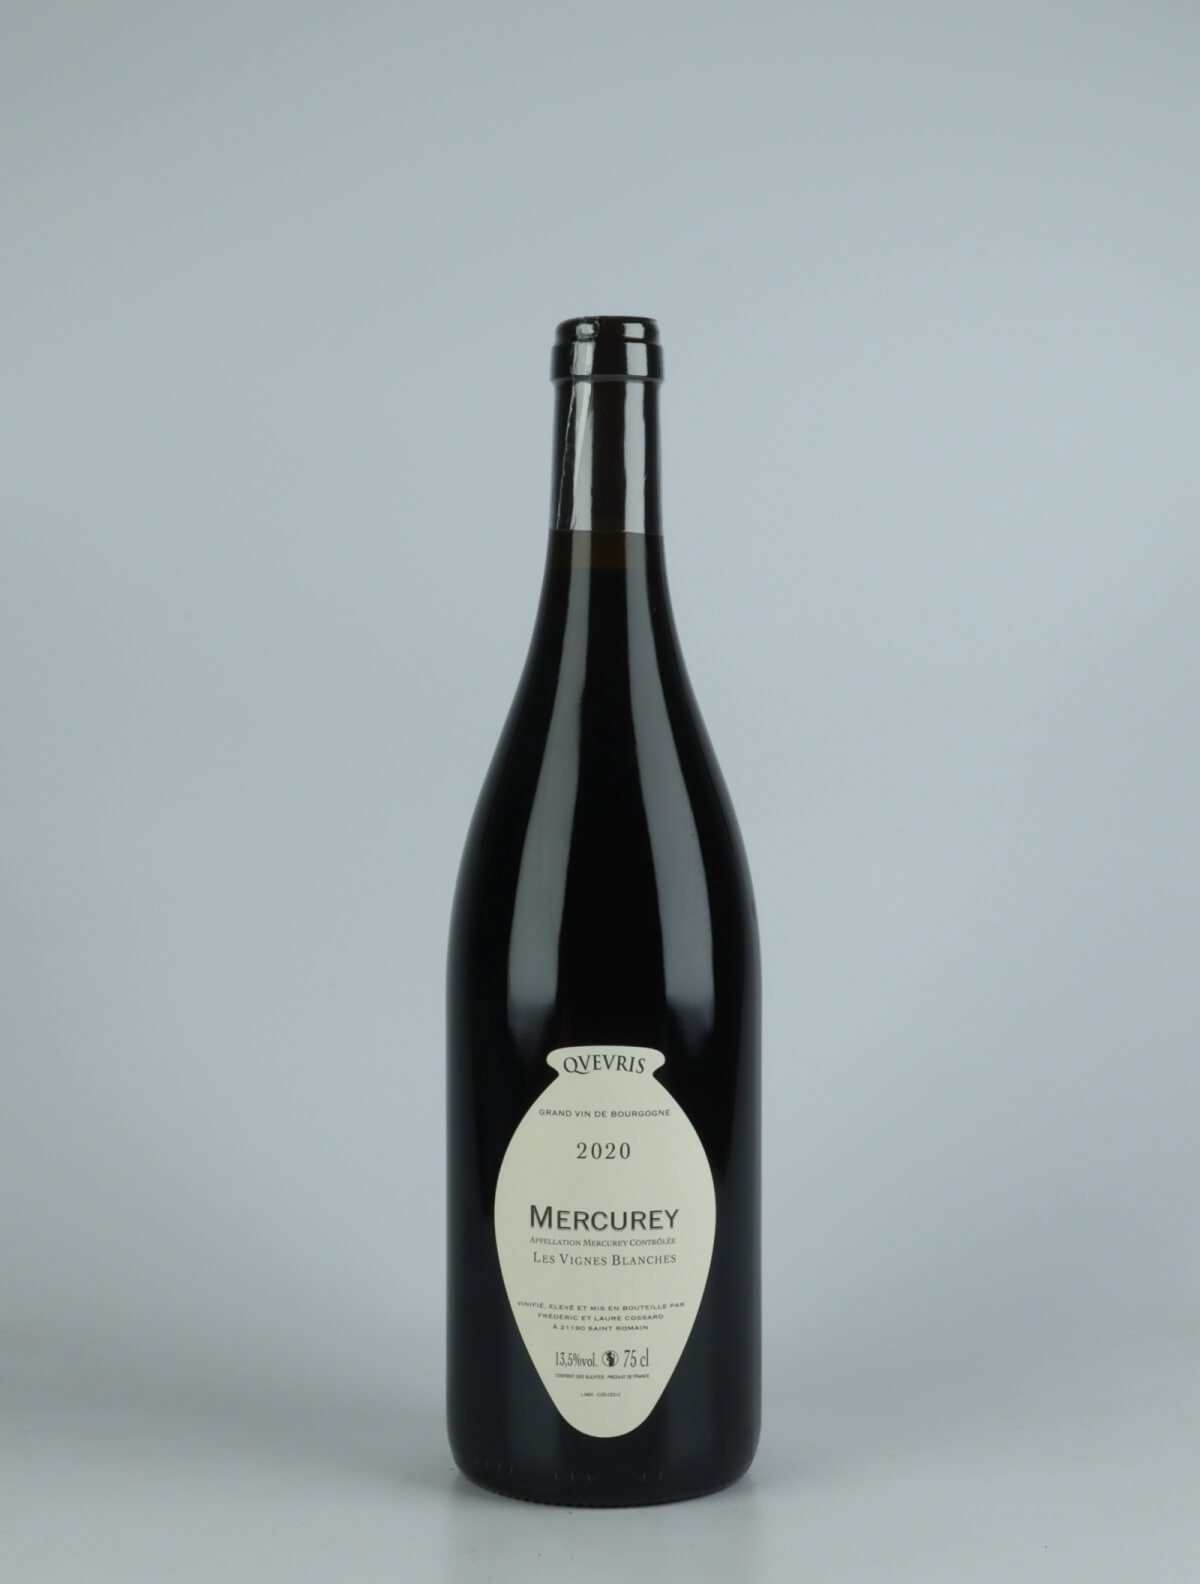 En flaske 2020 Mercurey - Les Vignes Blanches - Qvevris Rødvin fra Frédéric Cossard, Bourgogne i Frankrig